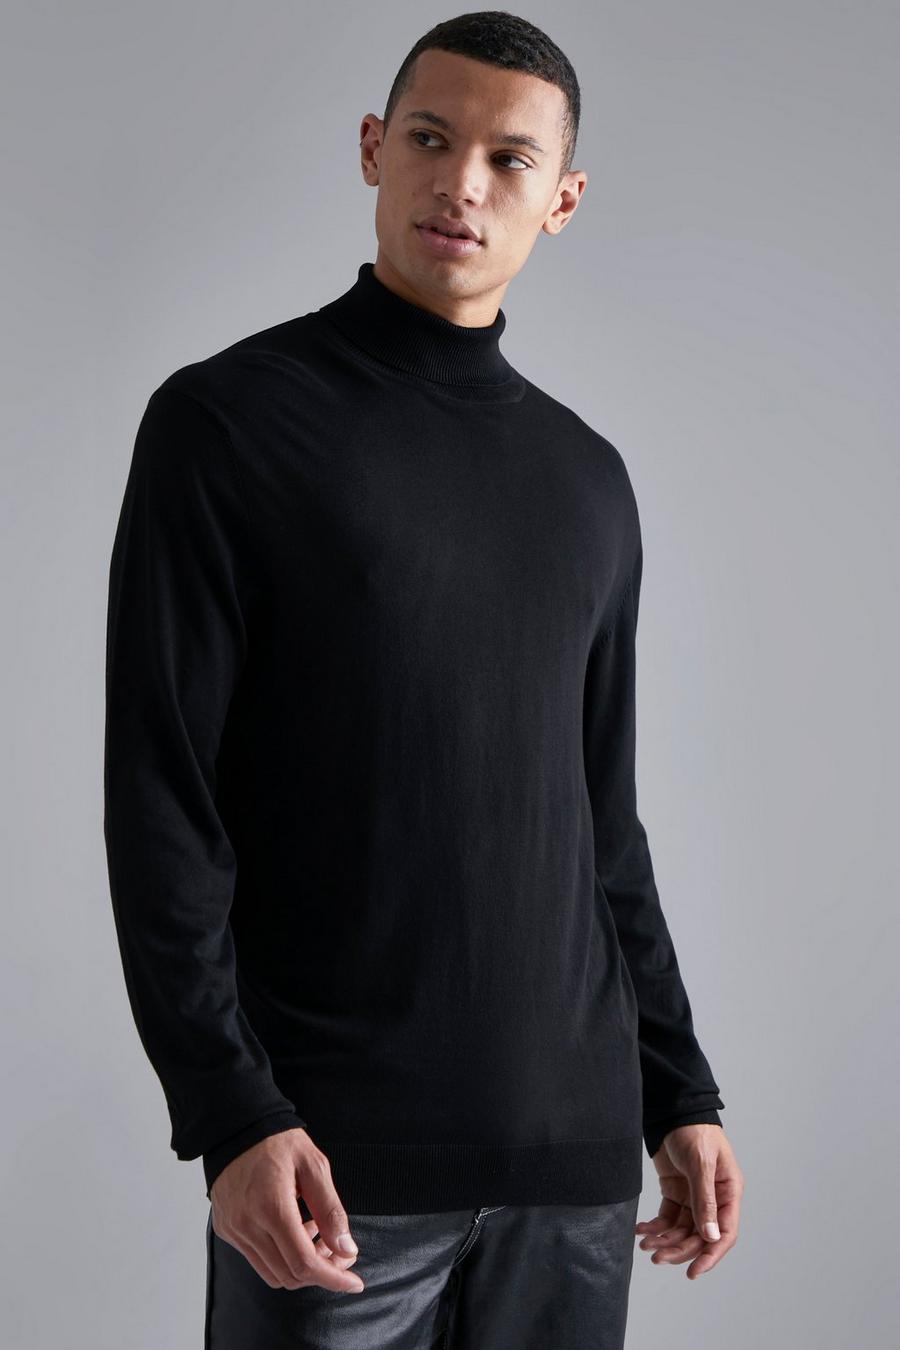 שחור negro סוודר בגזרה רגילה מבד ממוחזר עם צווארון נגלל, לגברים גבוהים